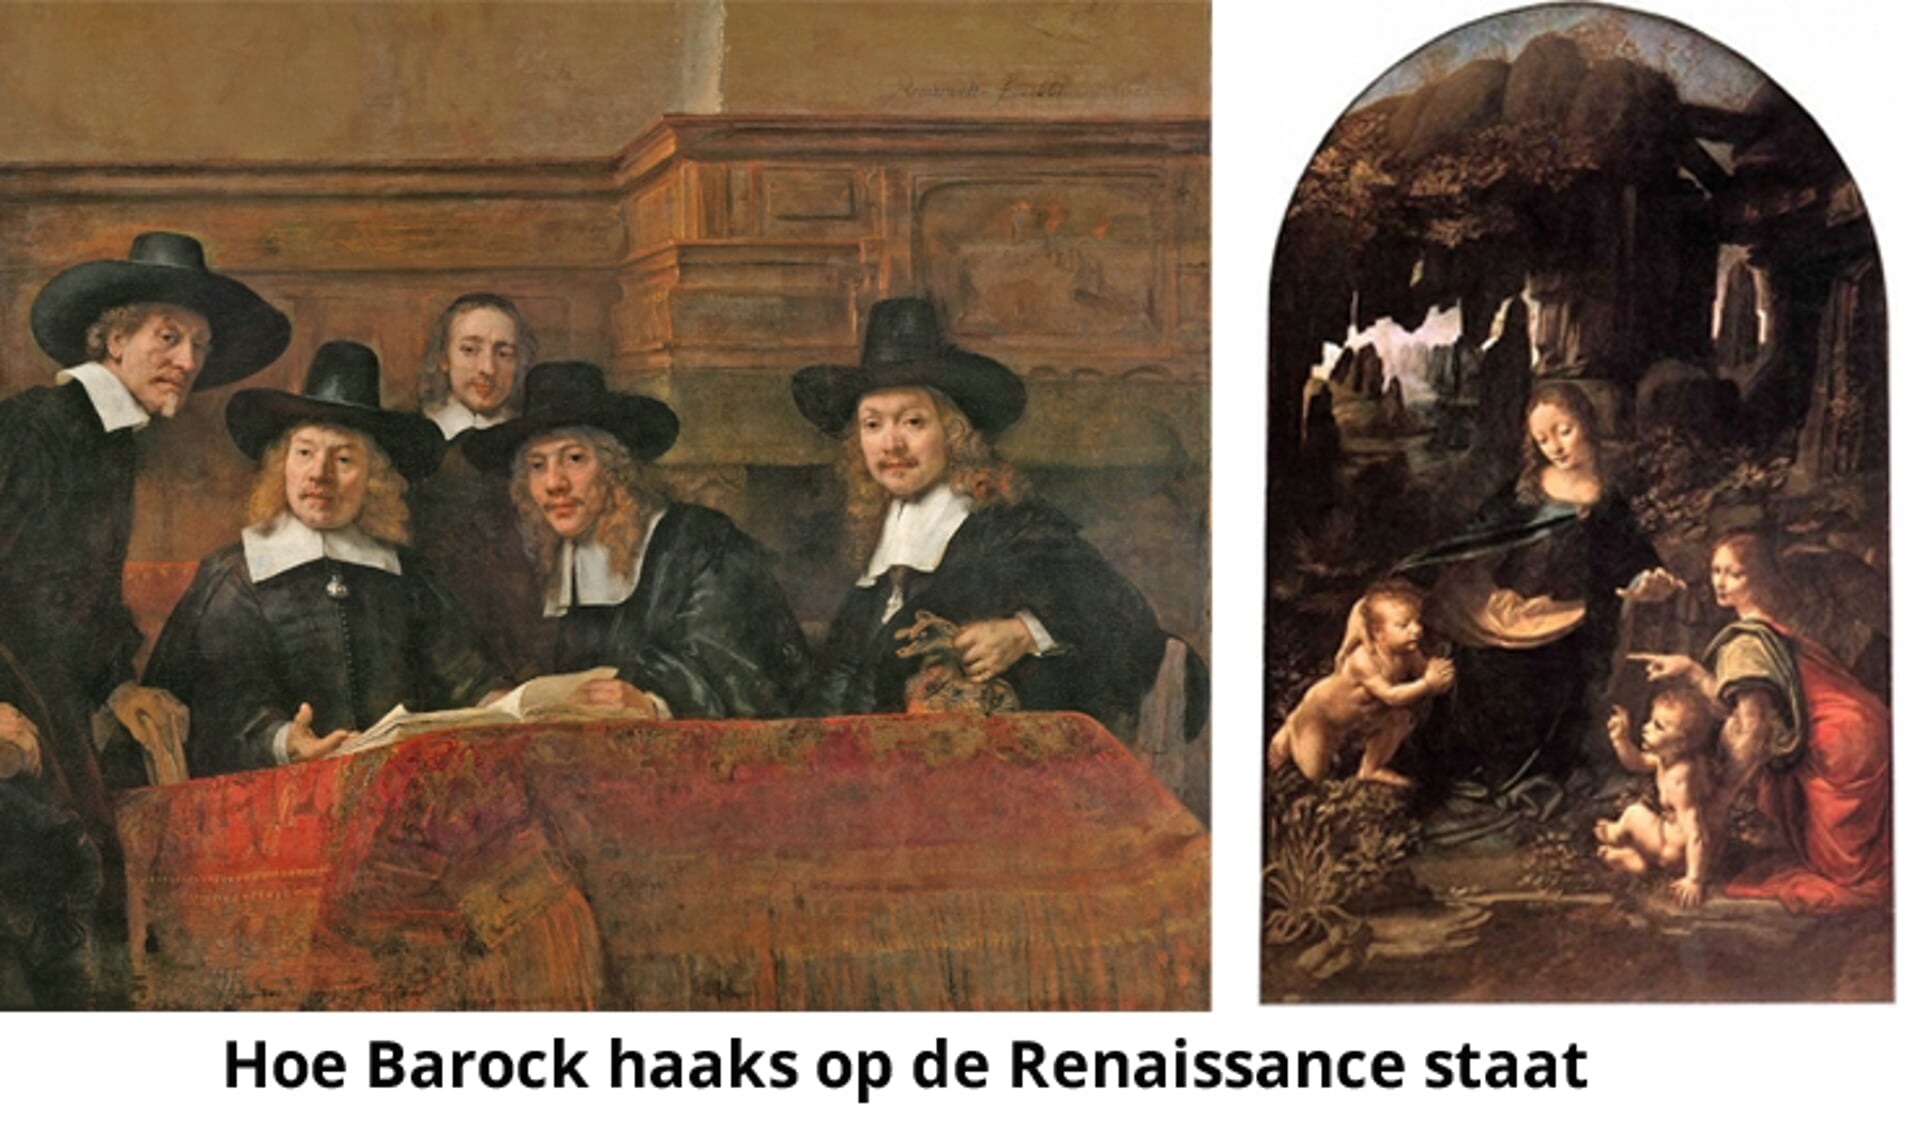 In de cursus komt onder andere aan de orde hoe de Barok haaks op de Renaissance staat. Foto: PR